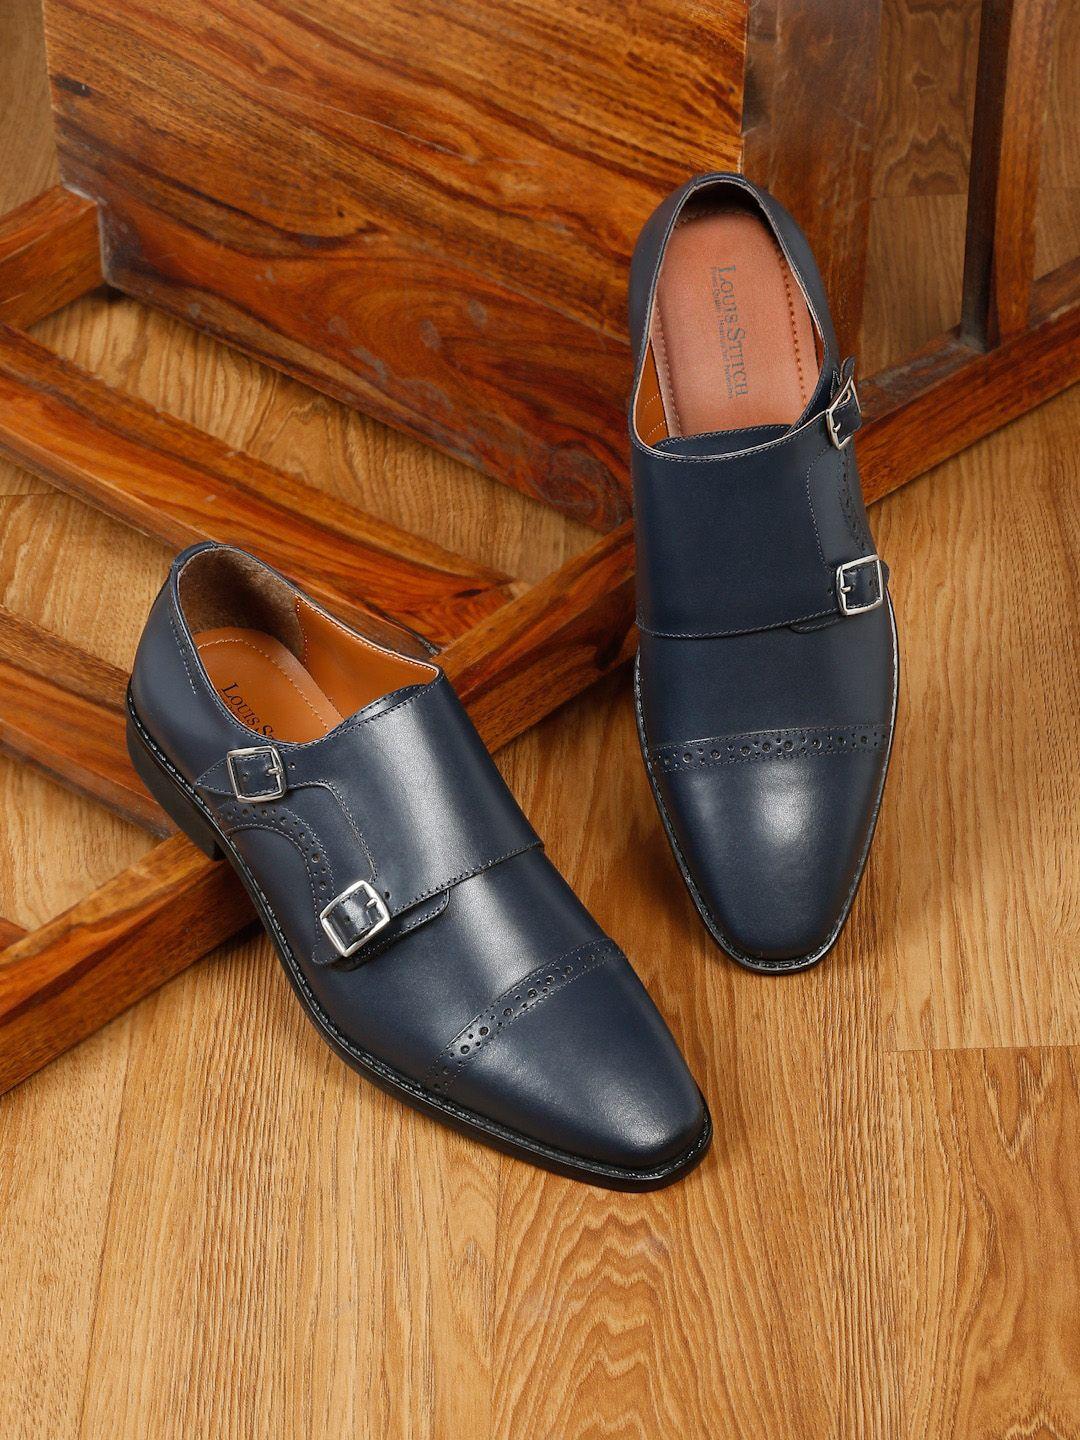 louis stitch men leather formal double monks shoes